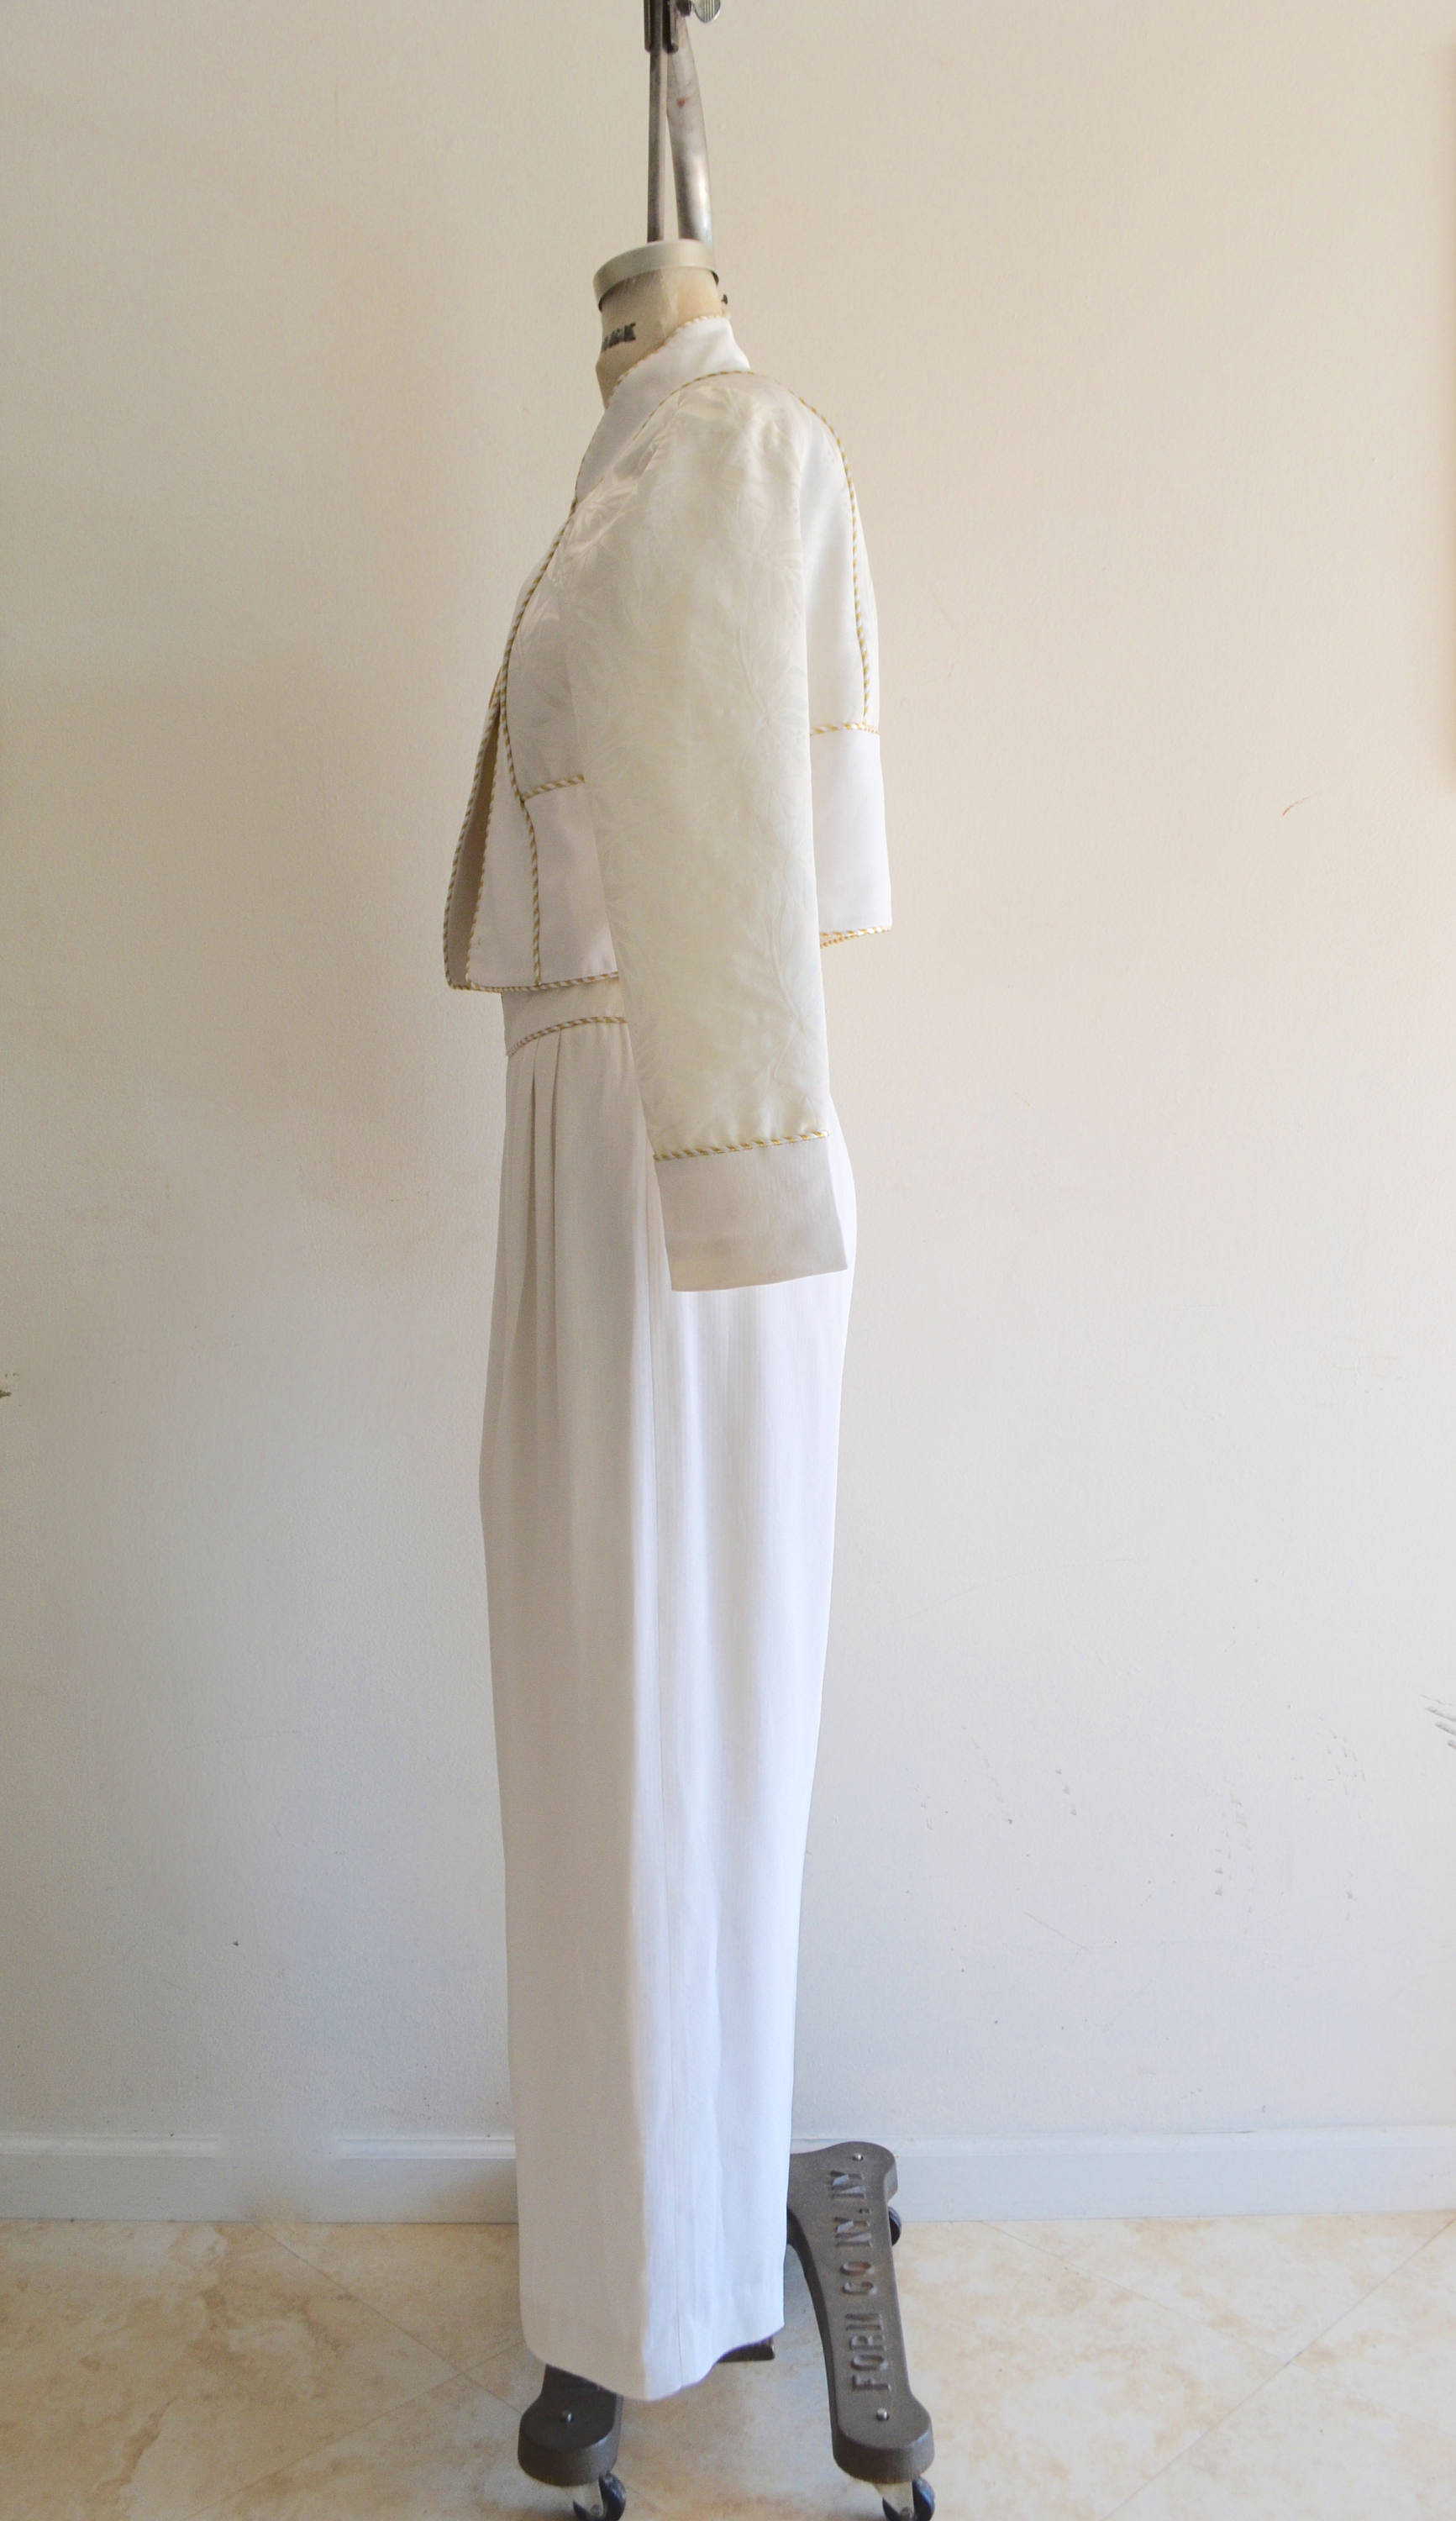 1980S Harem Mandarim Pant Suit Japanese White/Gold Mandala Cropped Jacket Blazer Miami Vice Indian